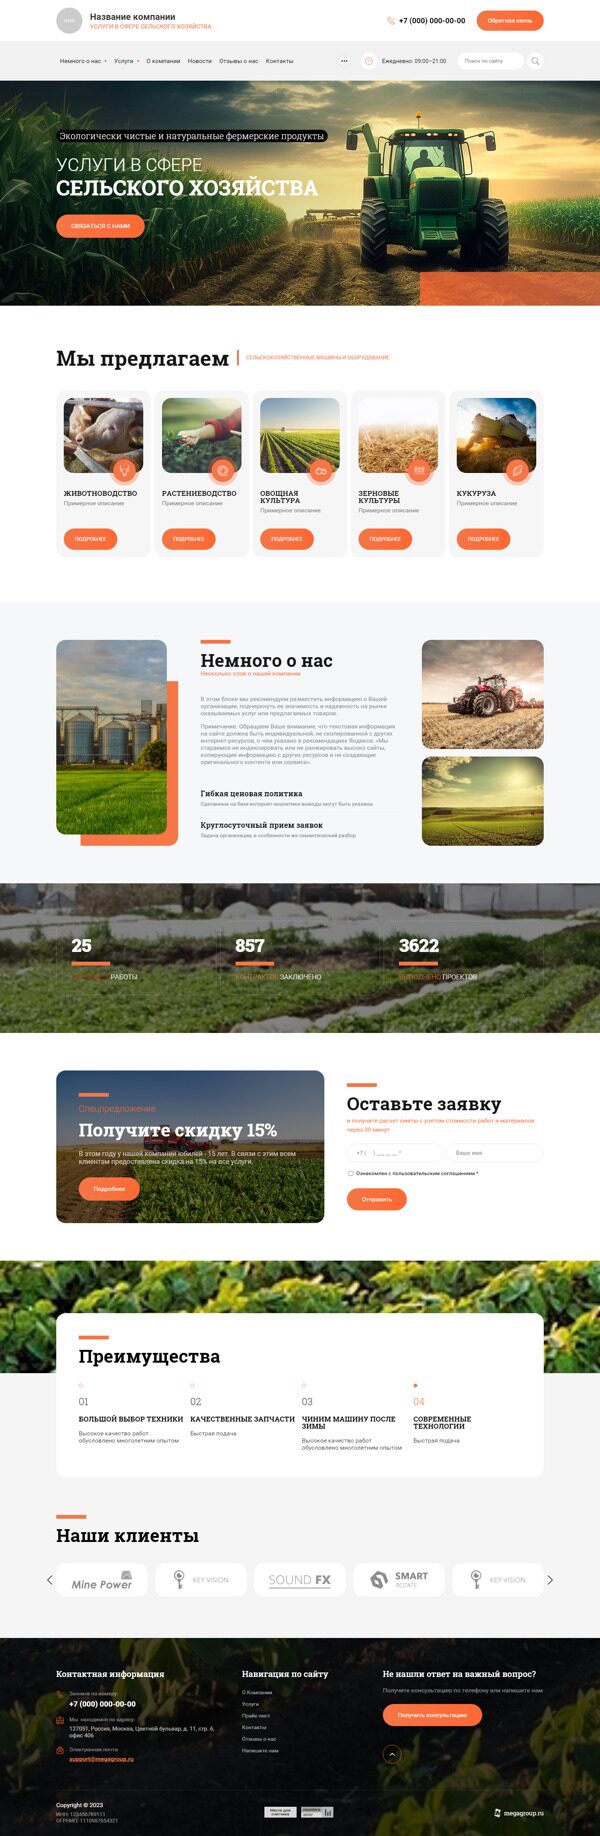 Готовый Сайт-Бизнес № 5146002 - Сельское хозяйство (Десктопная версия)